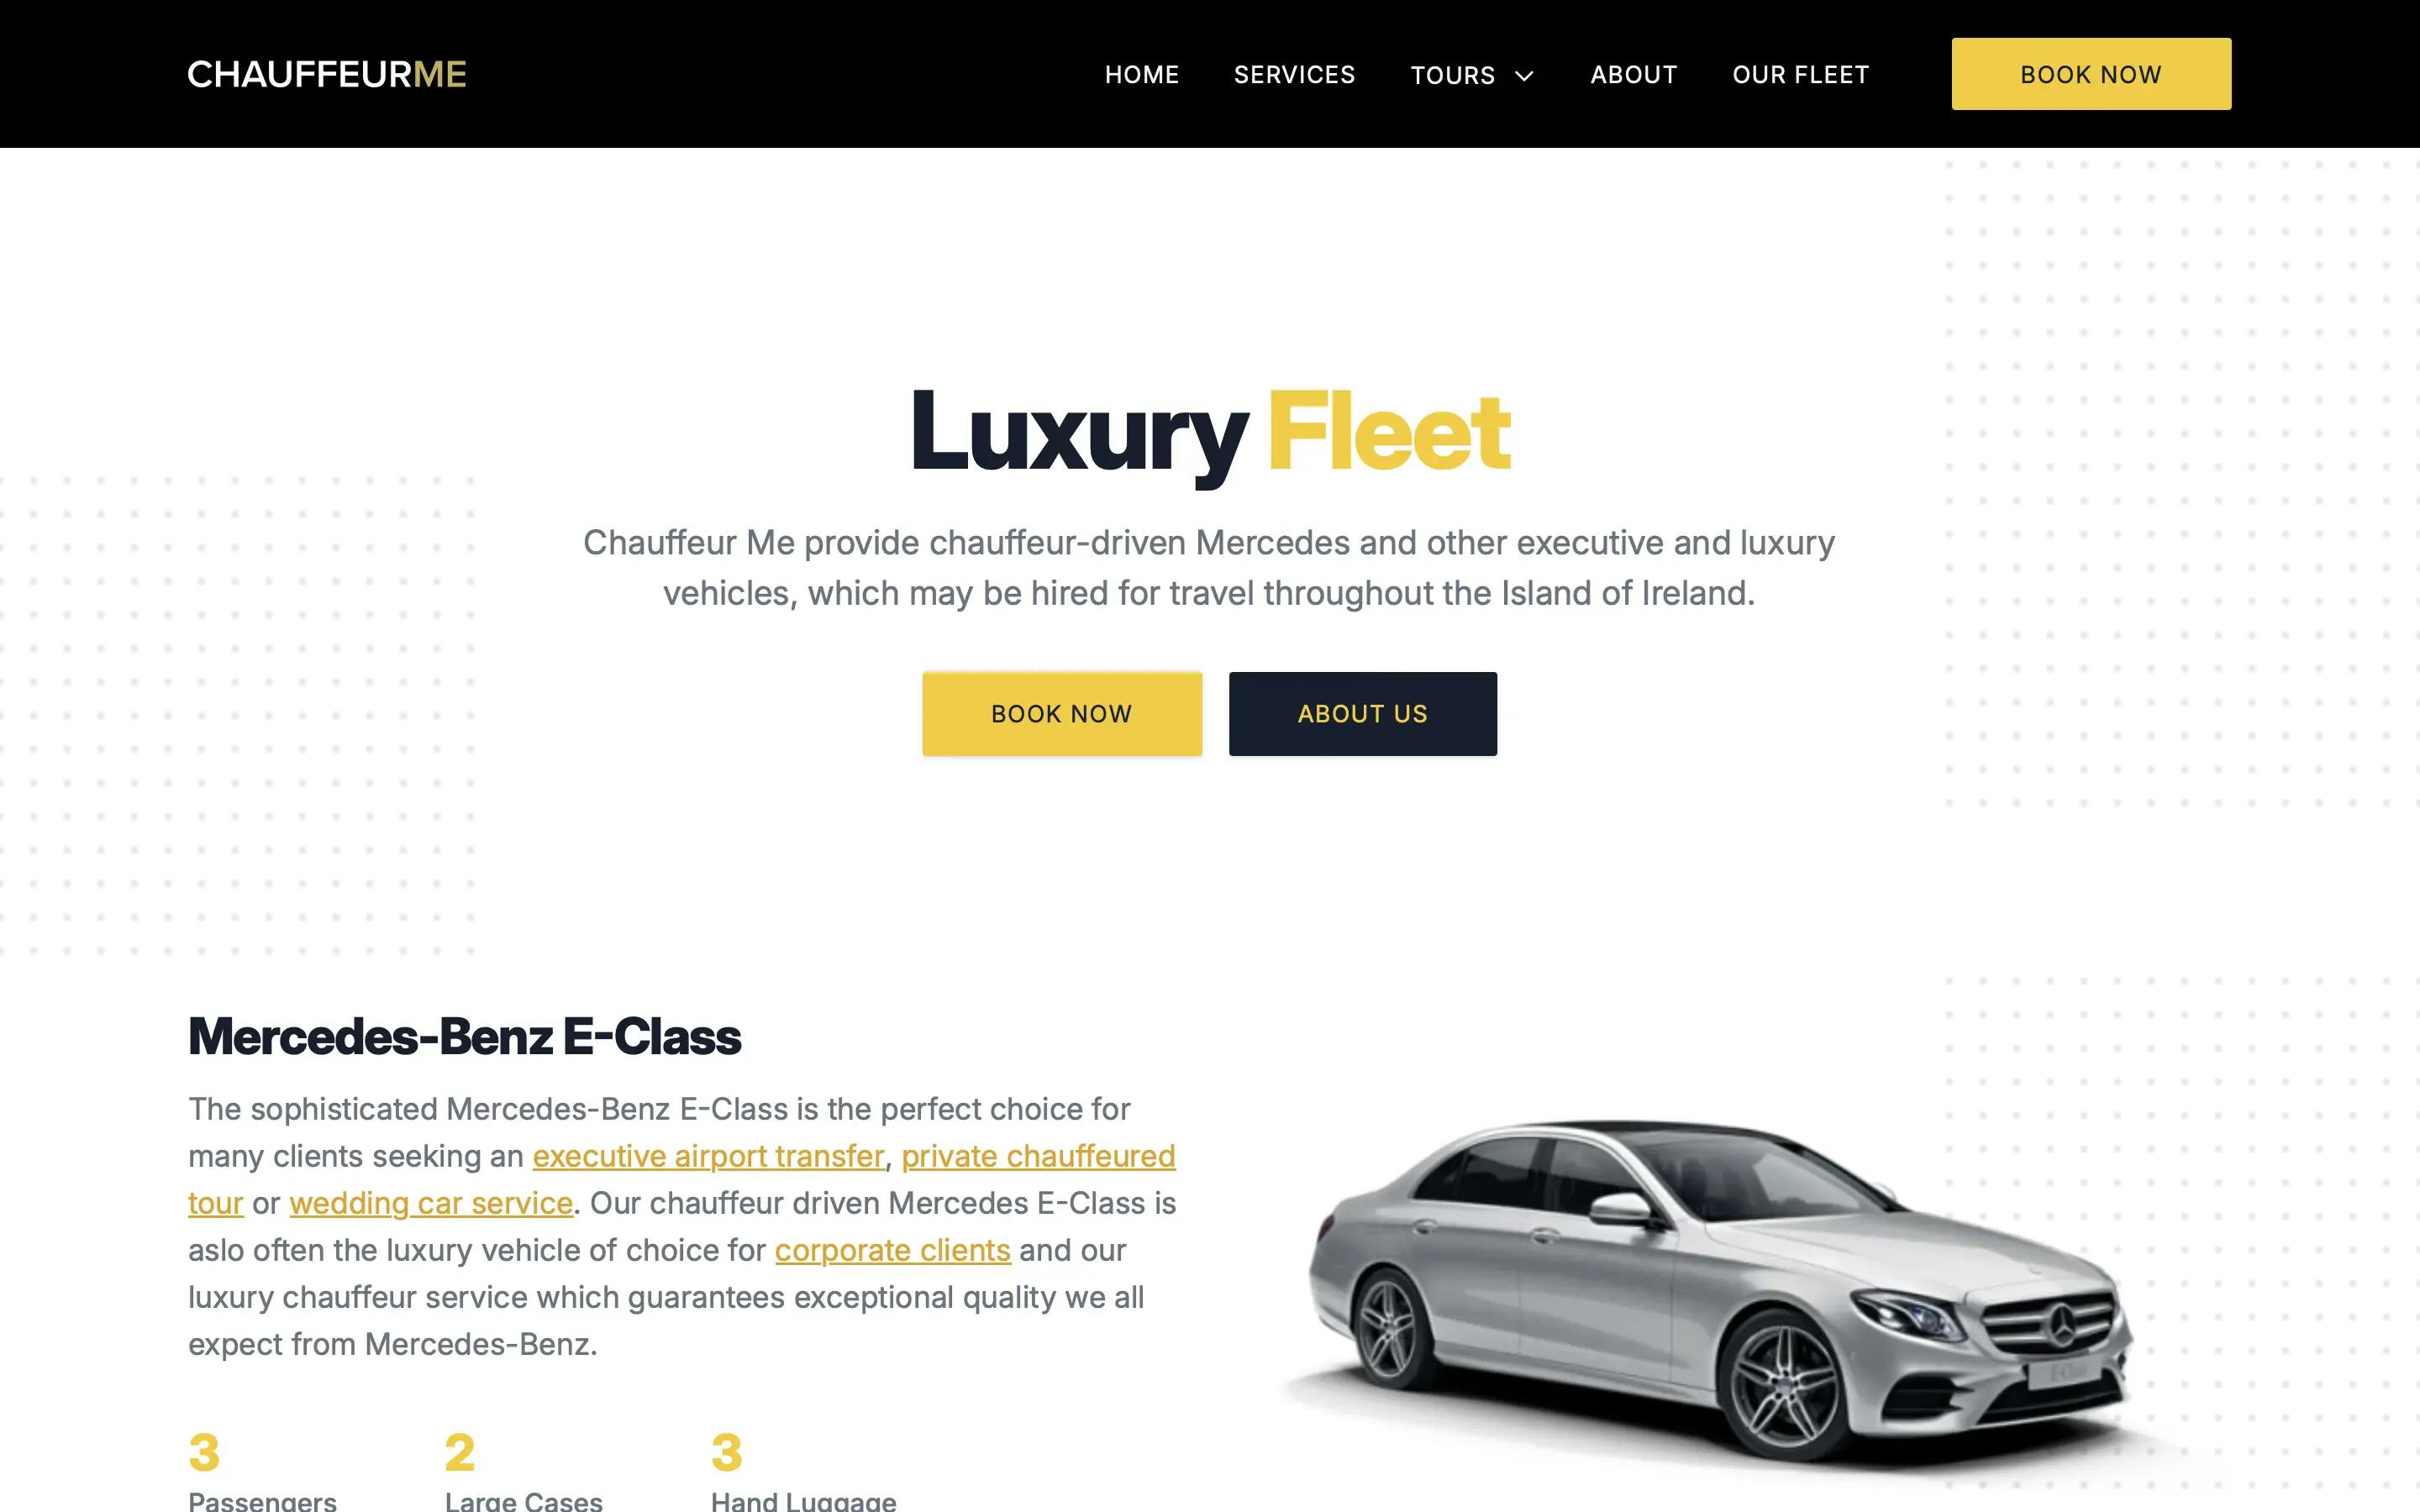 Chauffeur Me fleet page on desktop